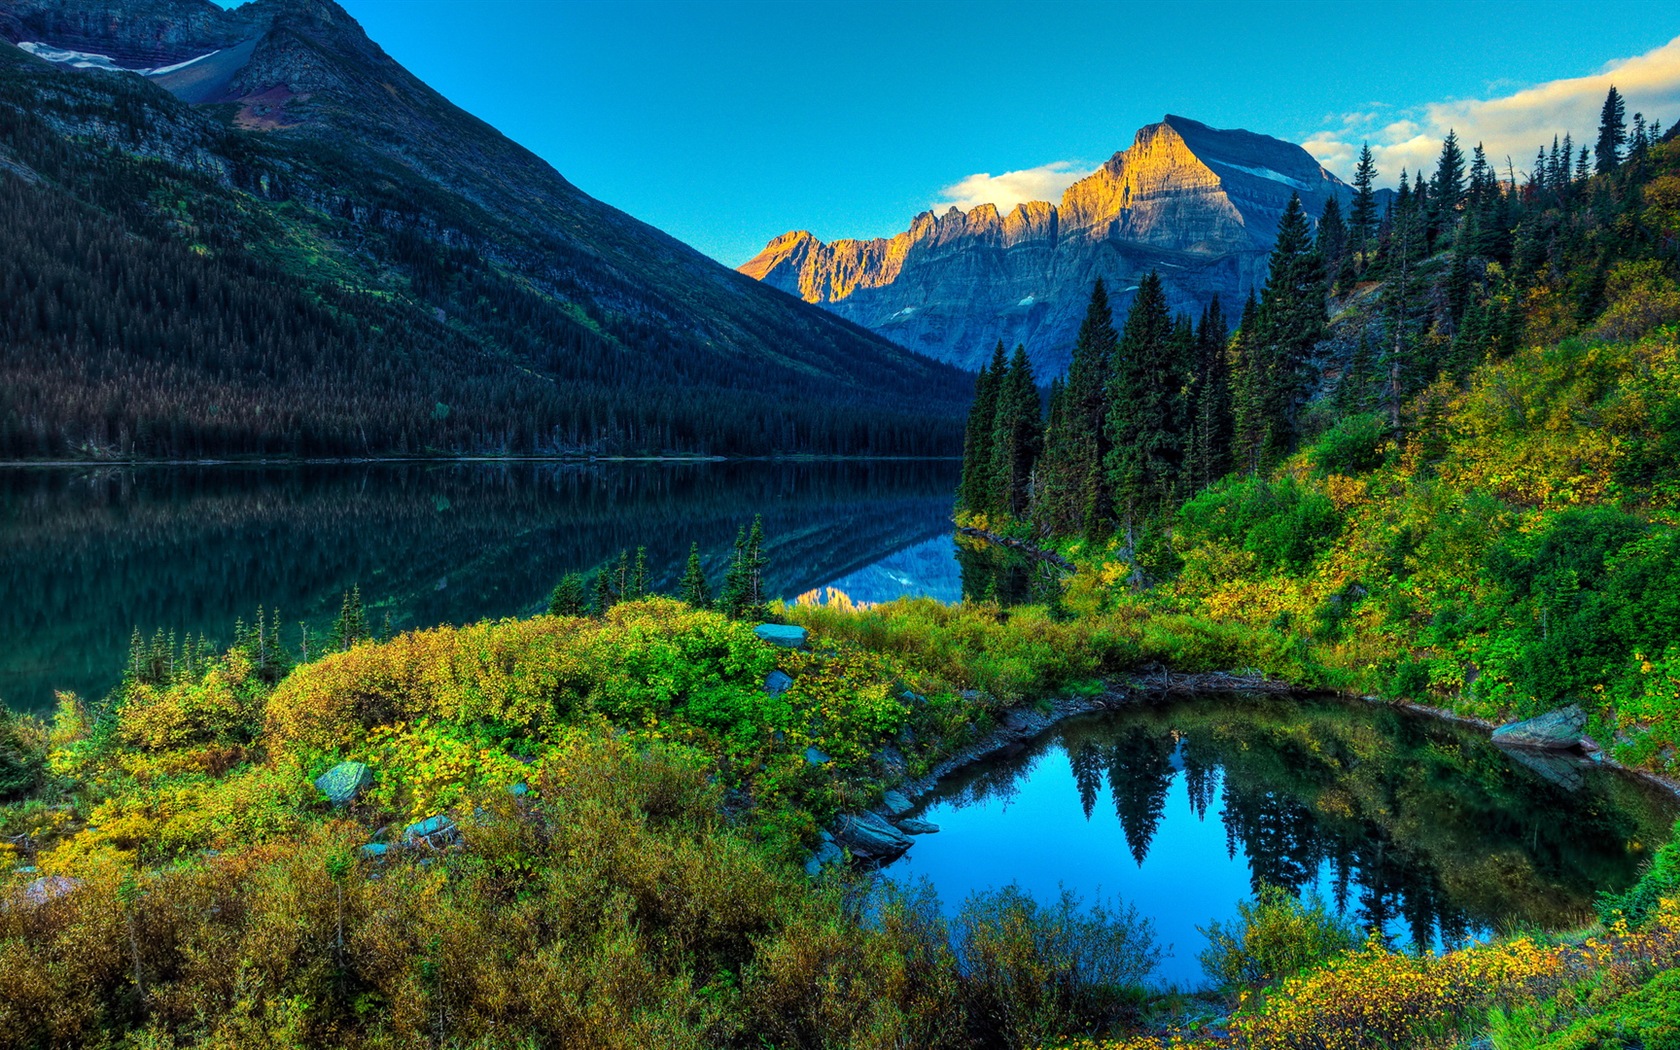 Fondos de pantalla HD paisajes naturales de gran belleza #1 - 1680x1050